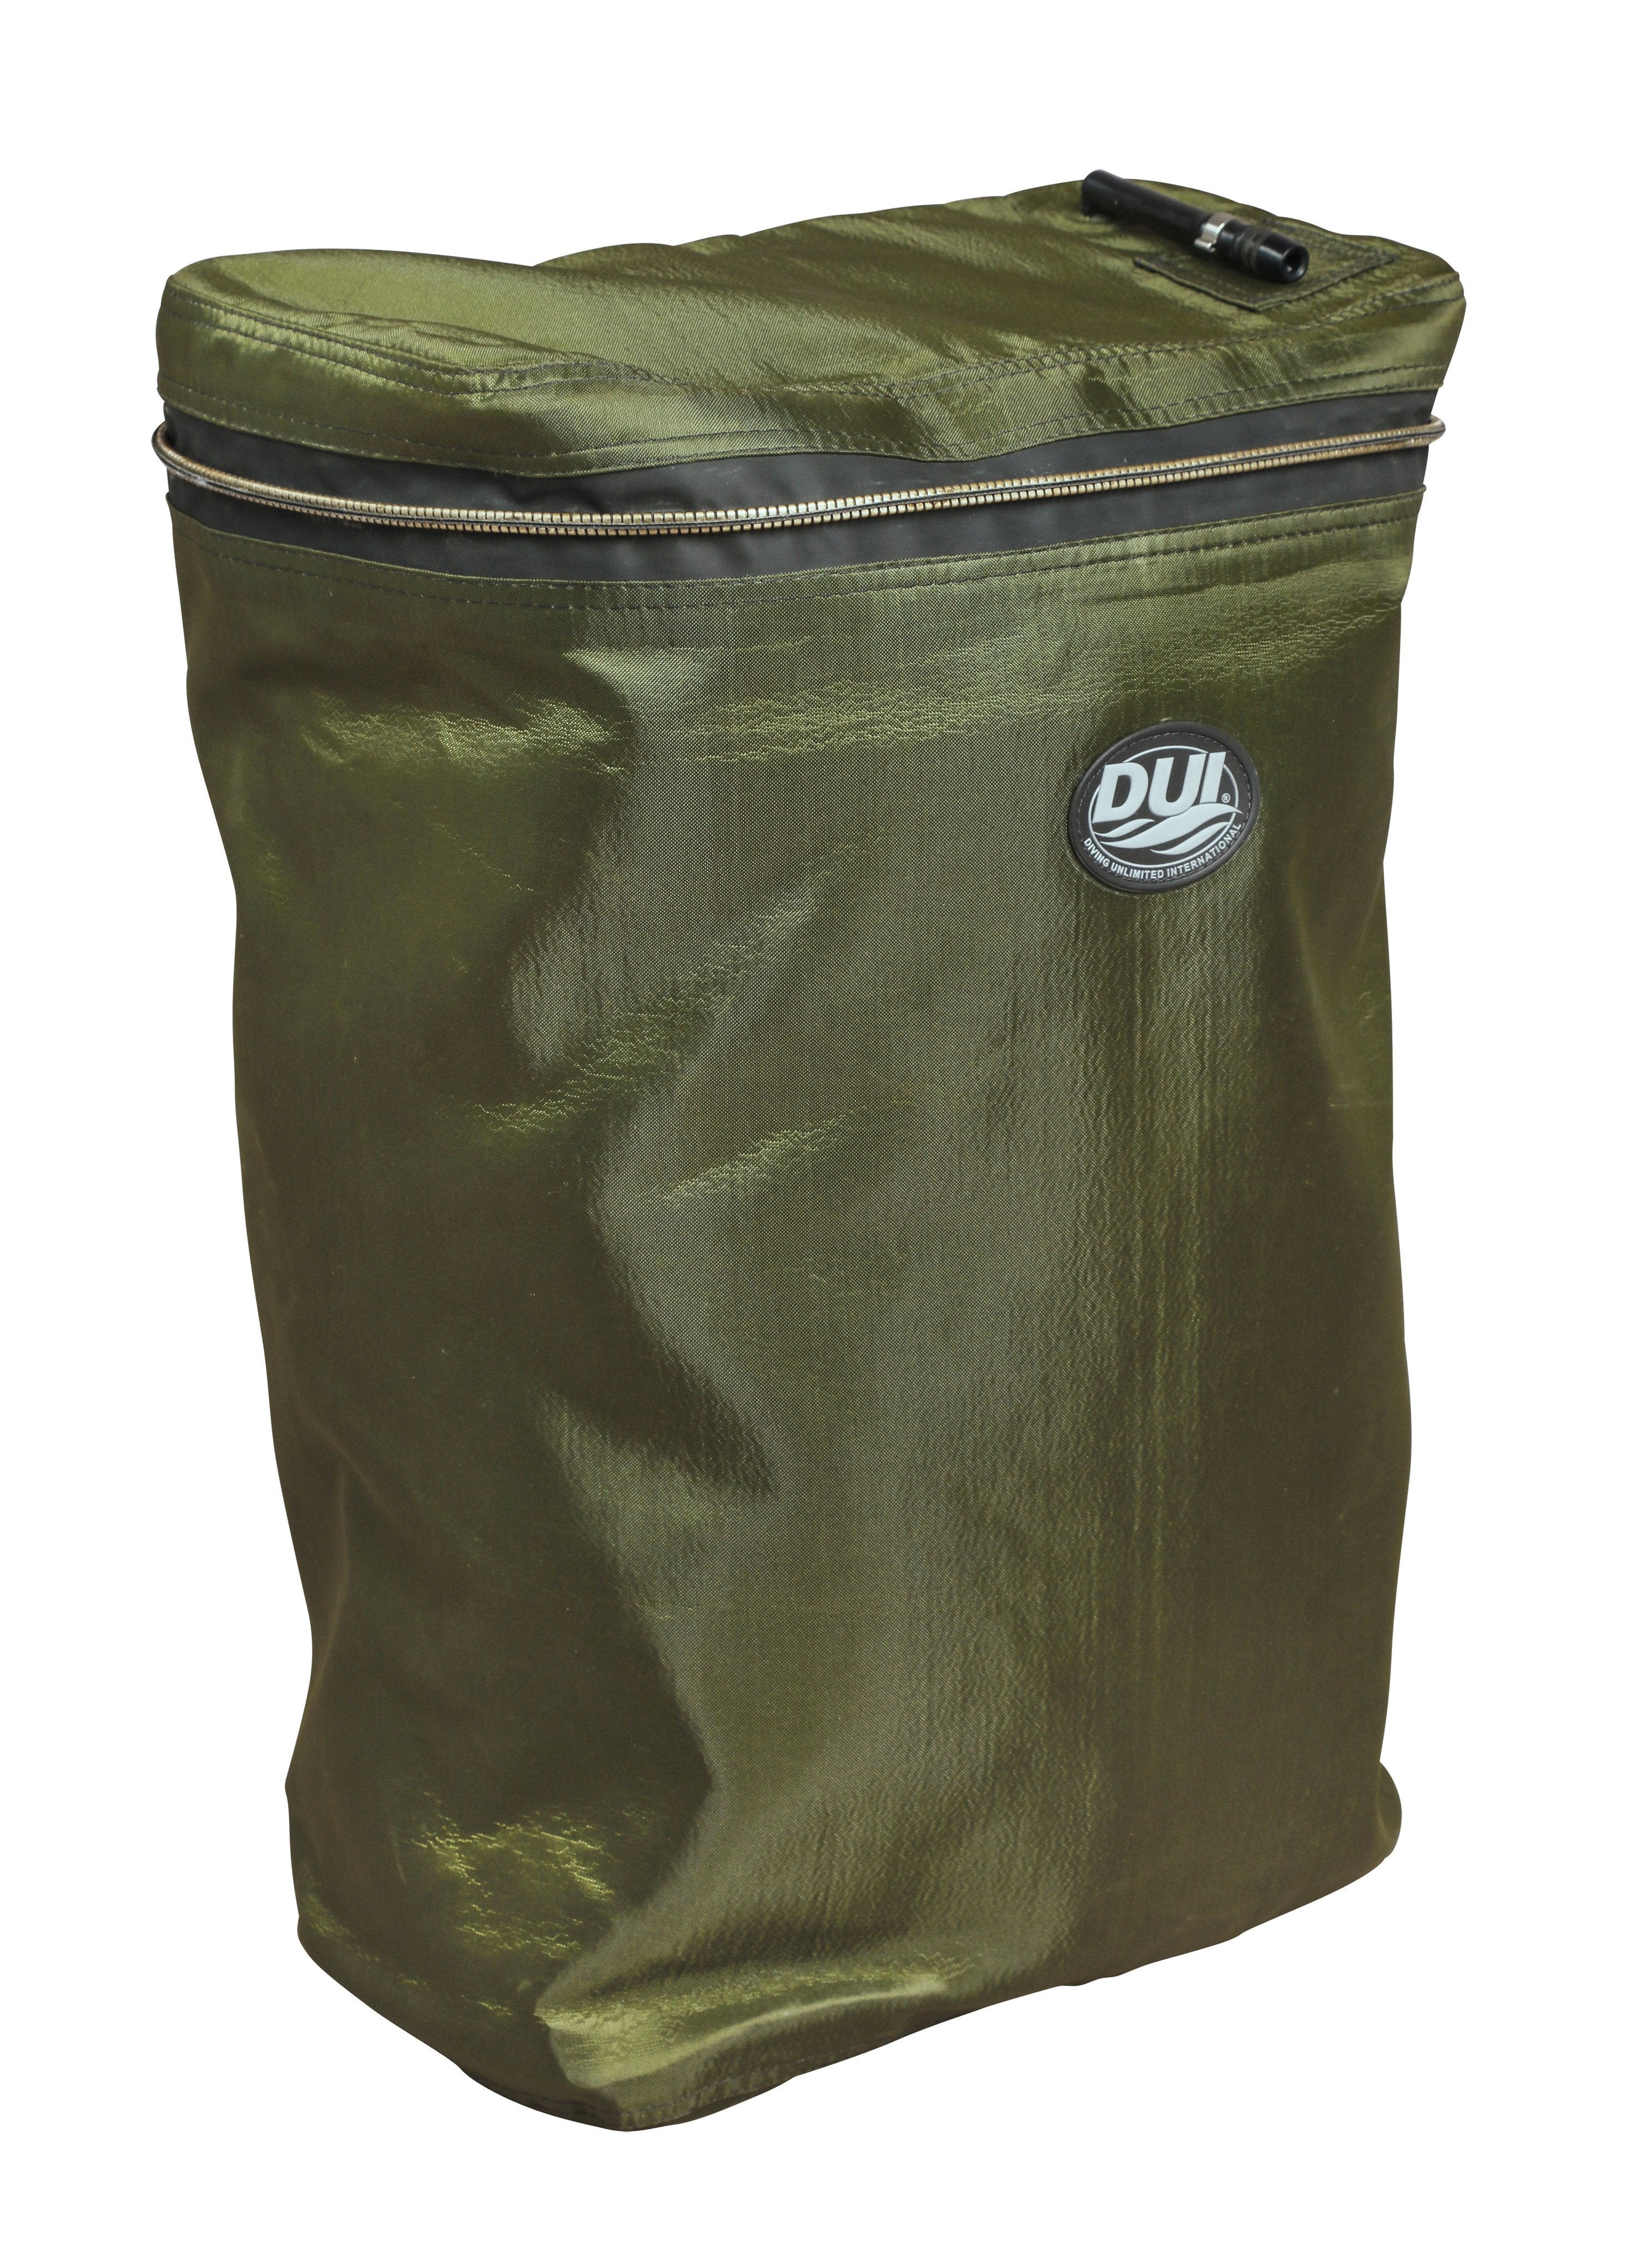 TLS Heavy Duty Rucksack Liner, Waterproof Bag - Olive Drab - Large or Medium